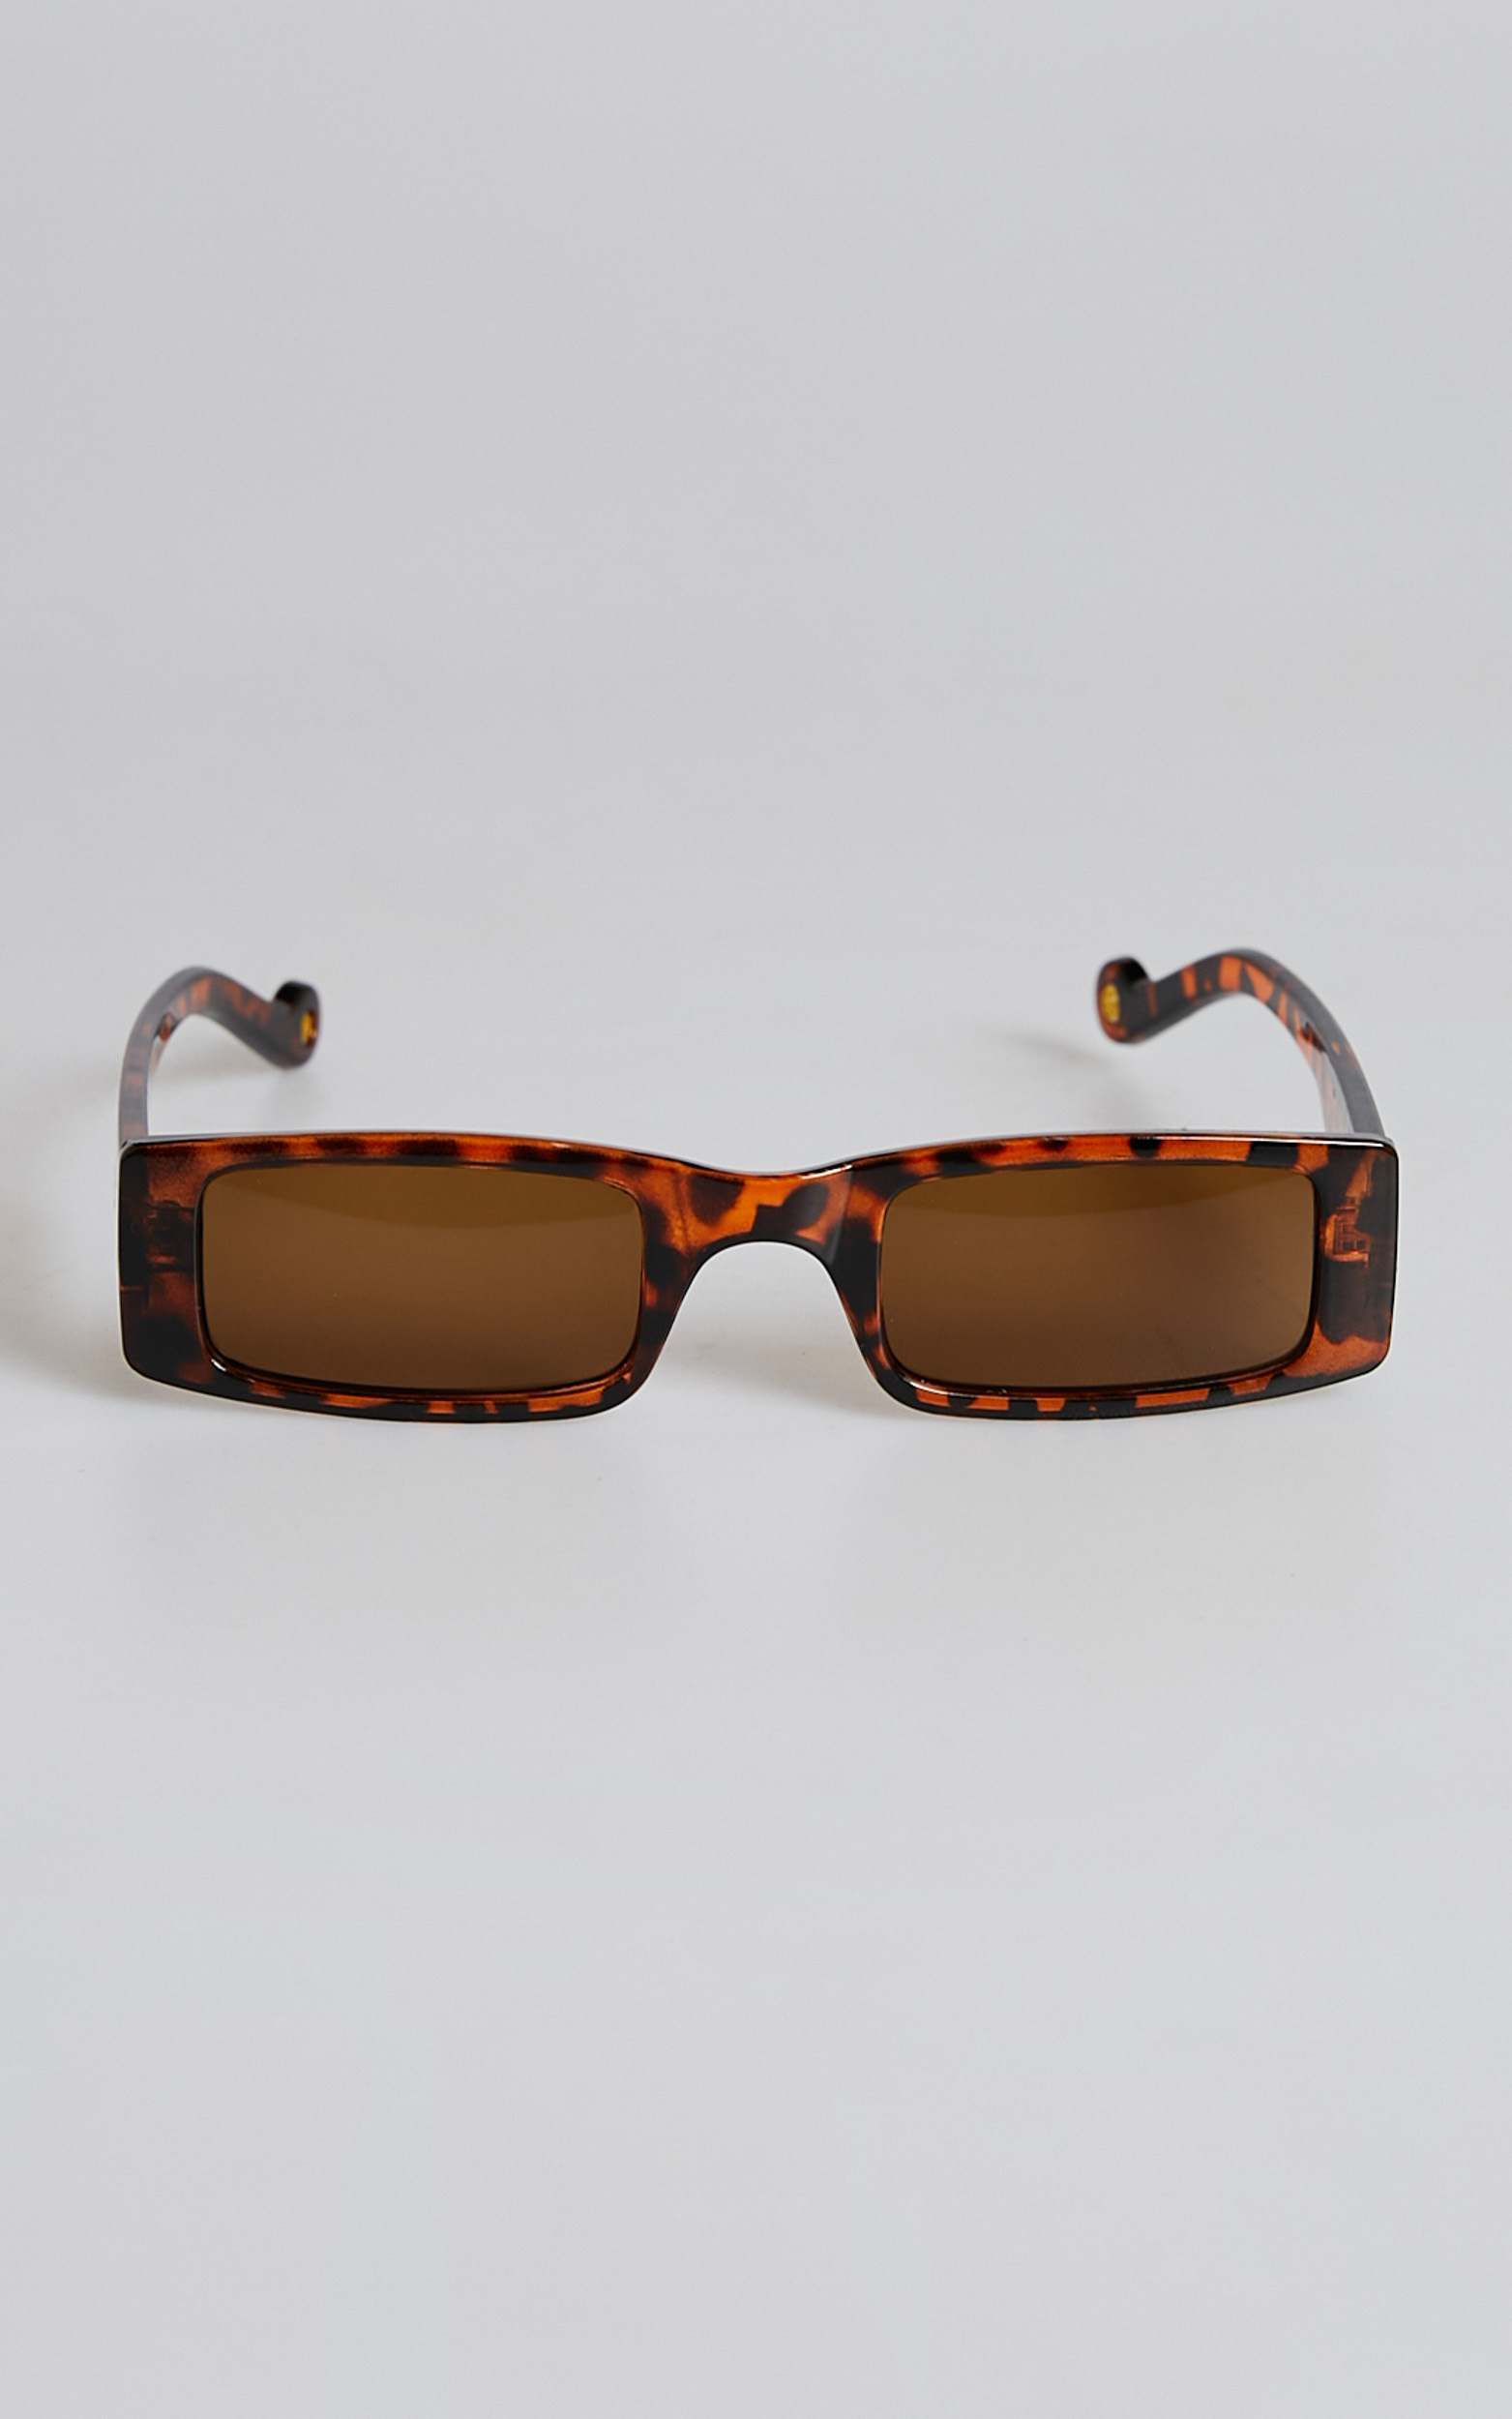 Jorgelina Rectangle Sunglasses in Tortoiseshell - NoSize, NEU2, hi-res image number null